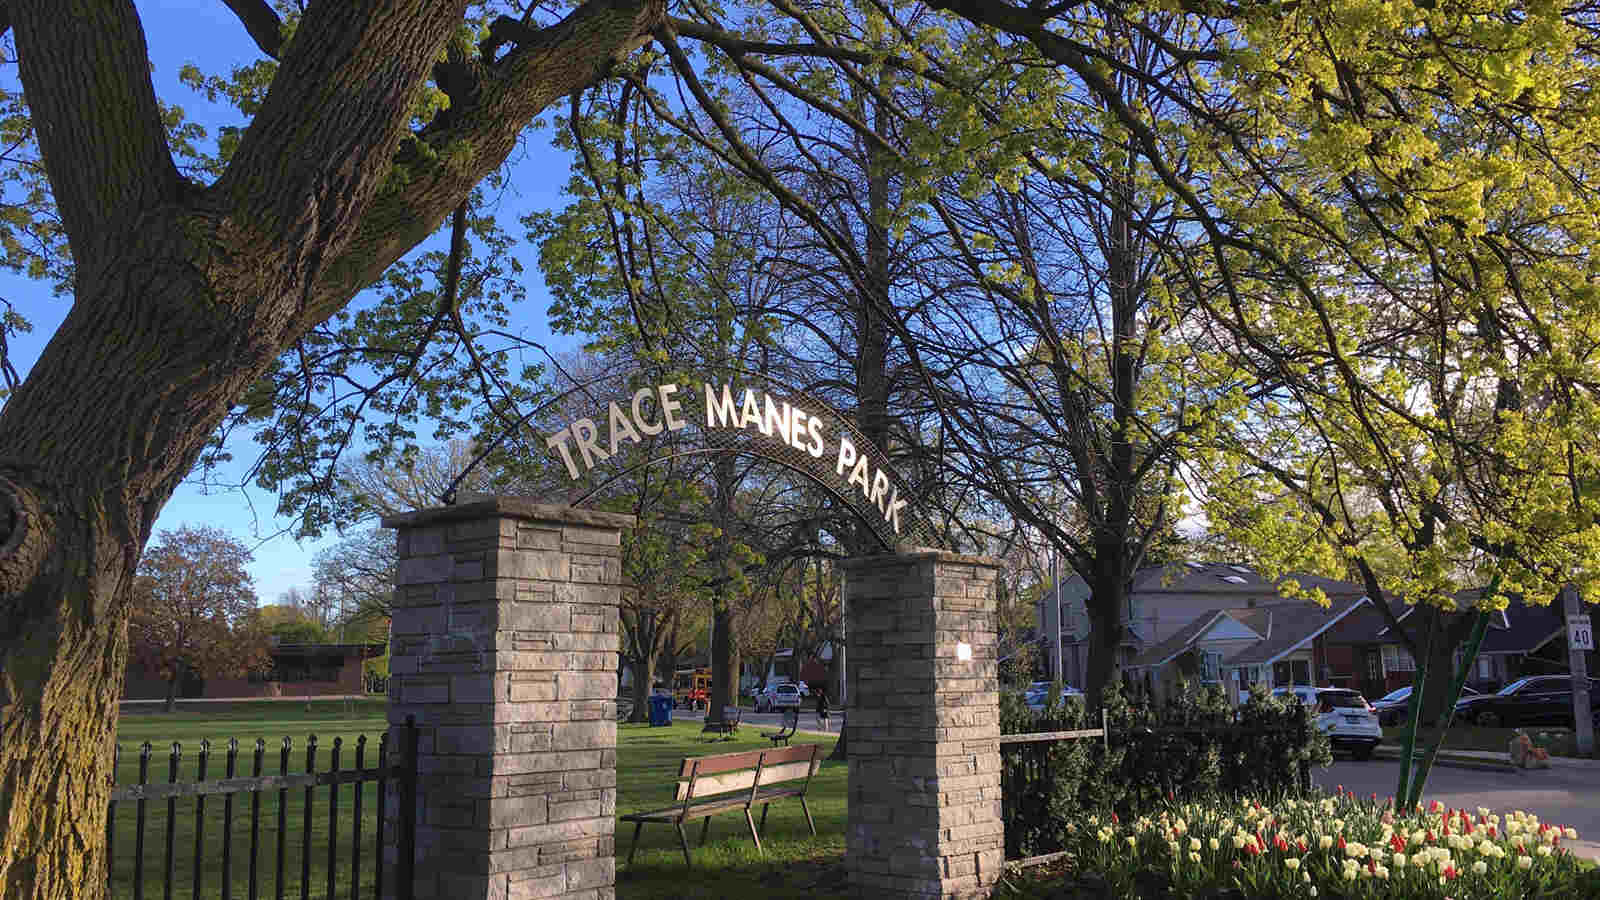 Trace Manes park entrance.